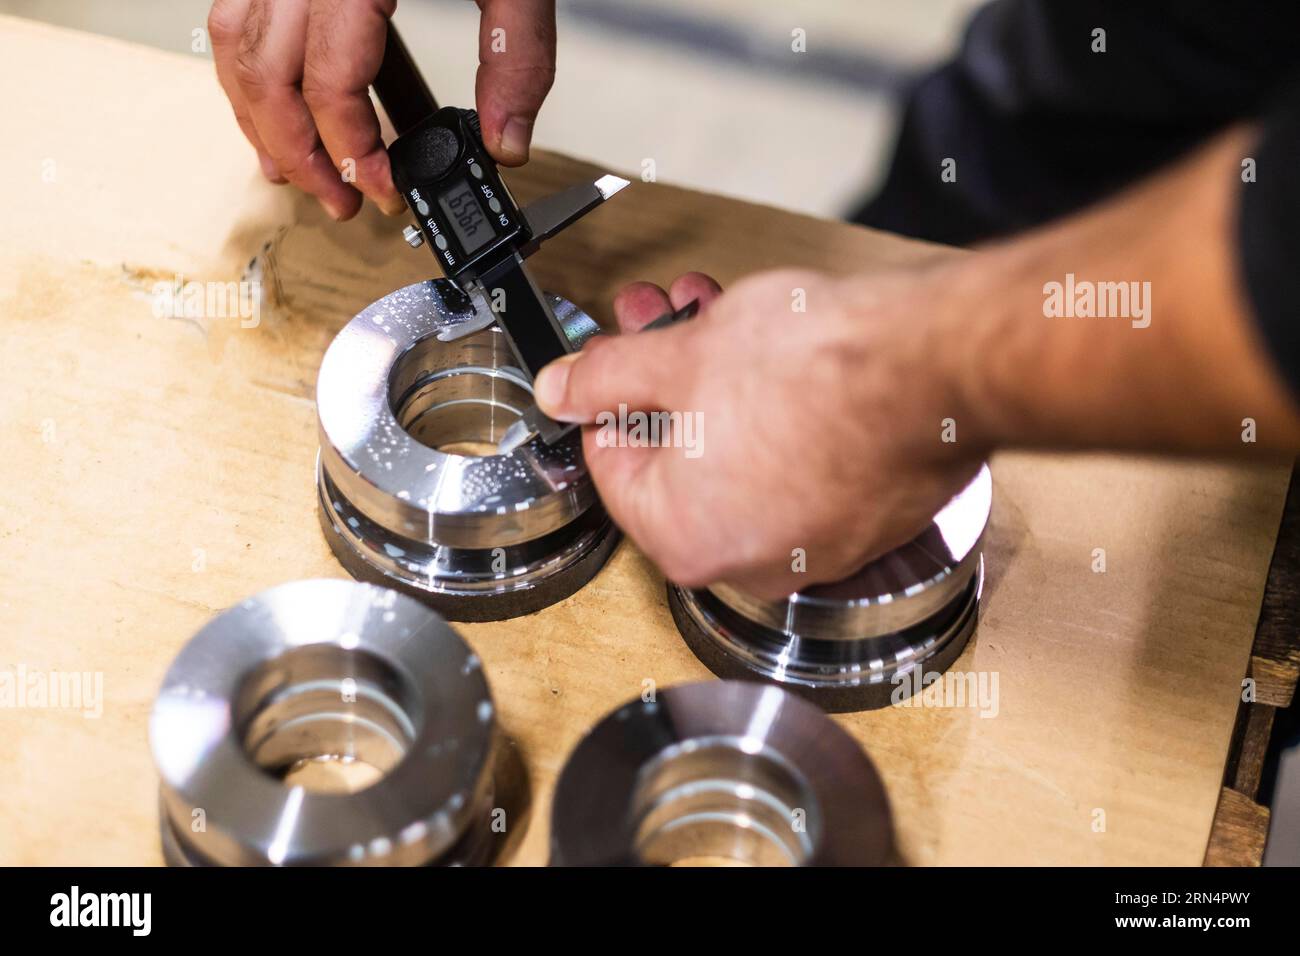 Un uomo utilizza un calibro digitale per misurare le dimensioni di un'apertura in una parte metallica Foto Stock